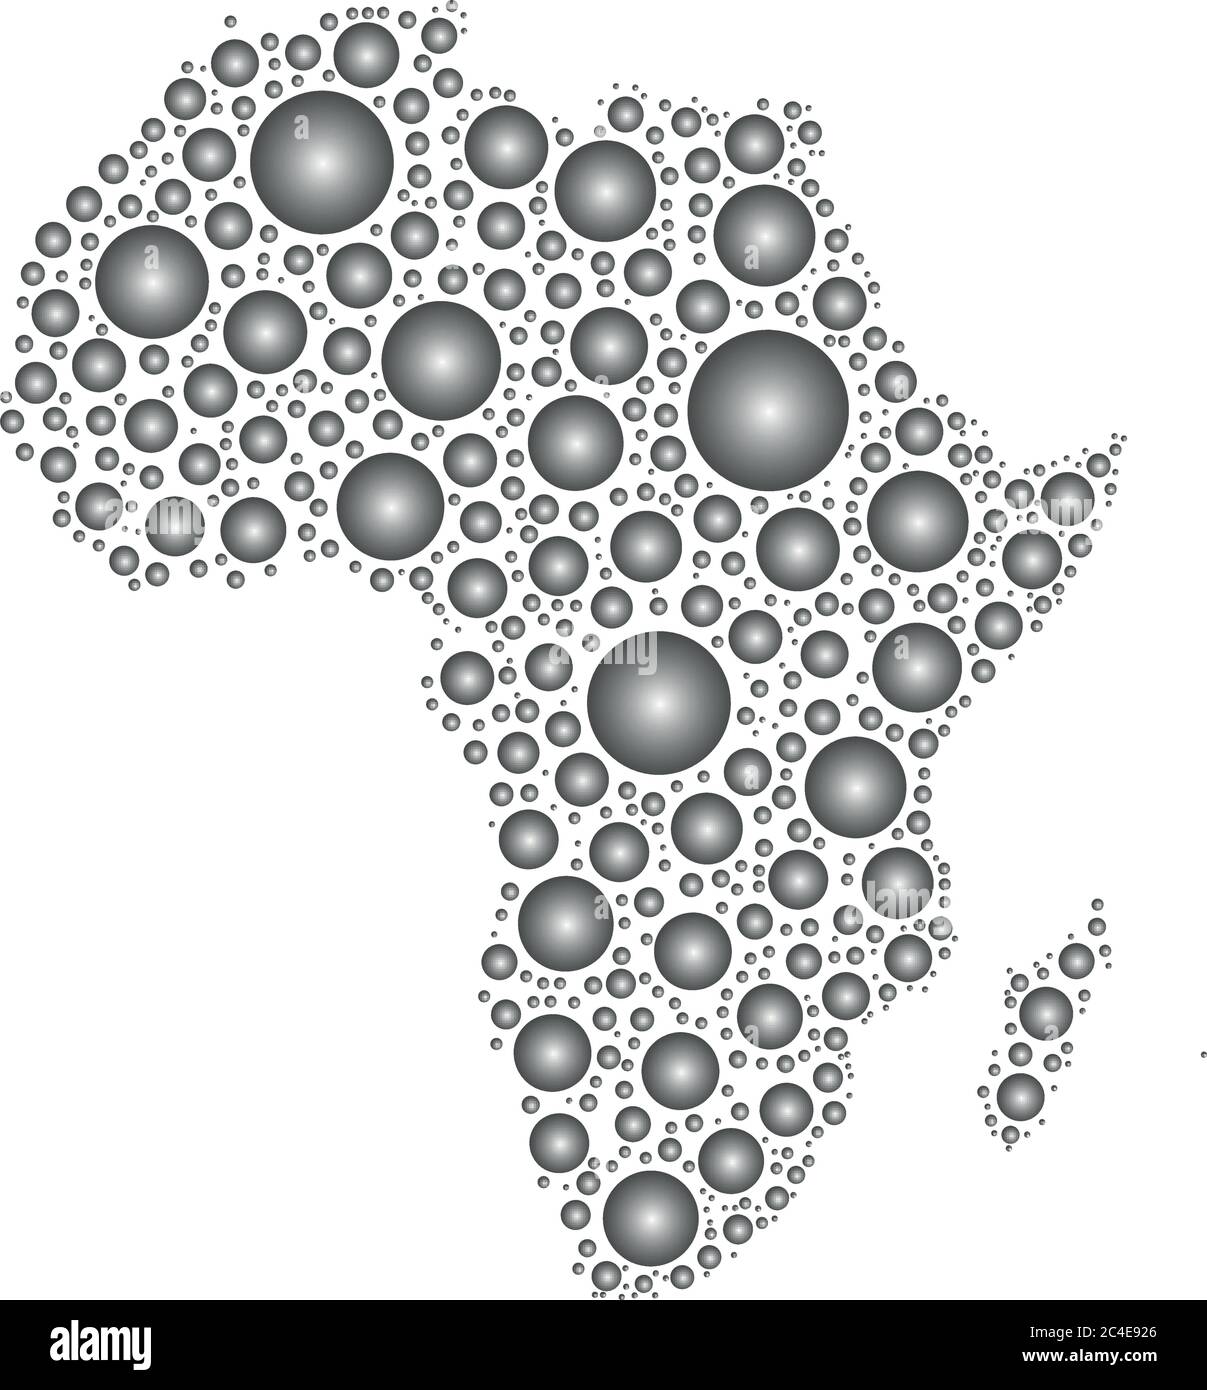 Silhouette des afrikanischen Kontinents. Mosaik aus grauen, gerundeten Regentropfen auf weißem Hintergrund. Vektorgrafik. Stock Vektor